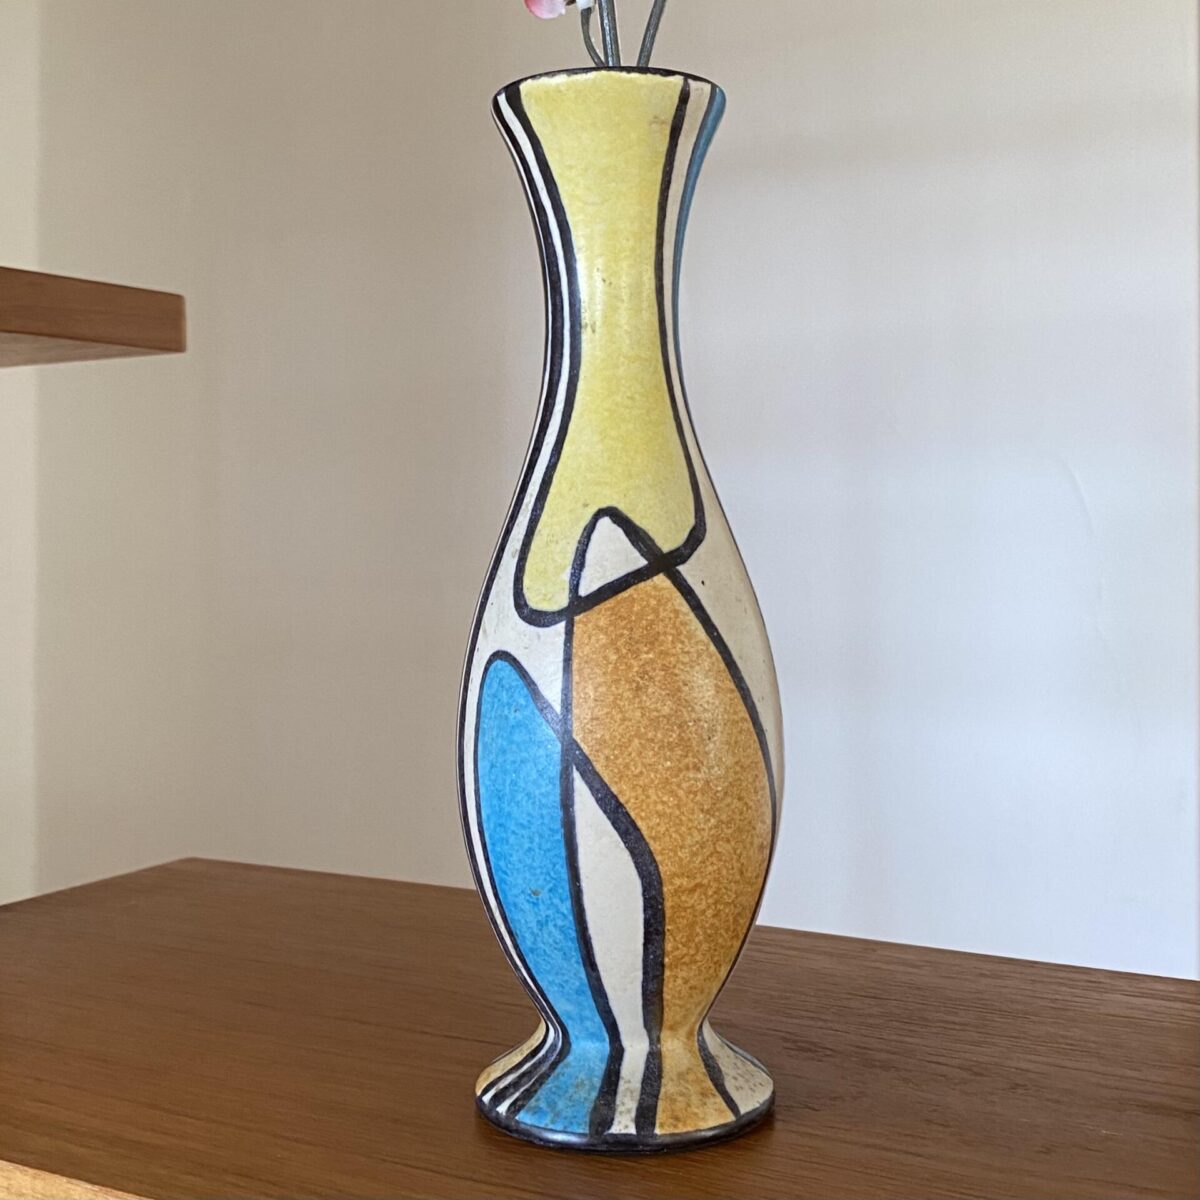 Bunte Keramik Vase aus den 50er/60er Jahren. Durchmesser 7cm Höhe 22cm. 